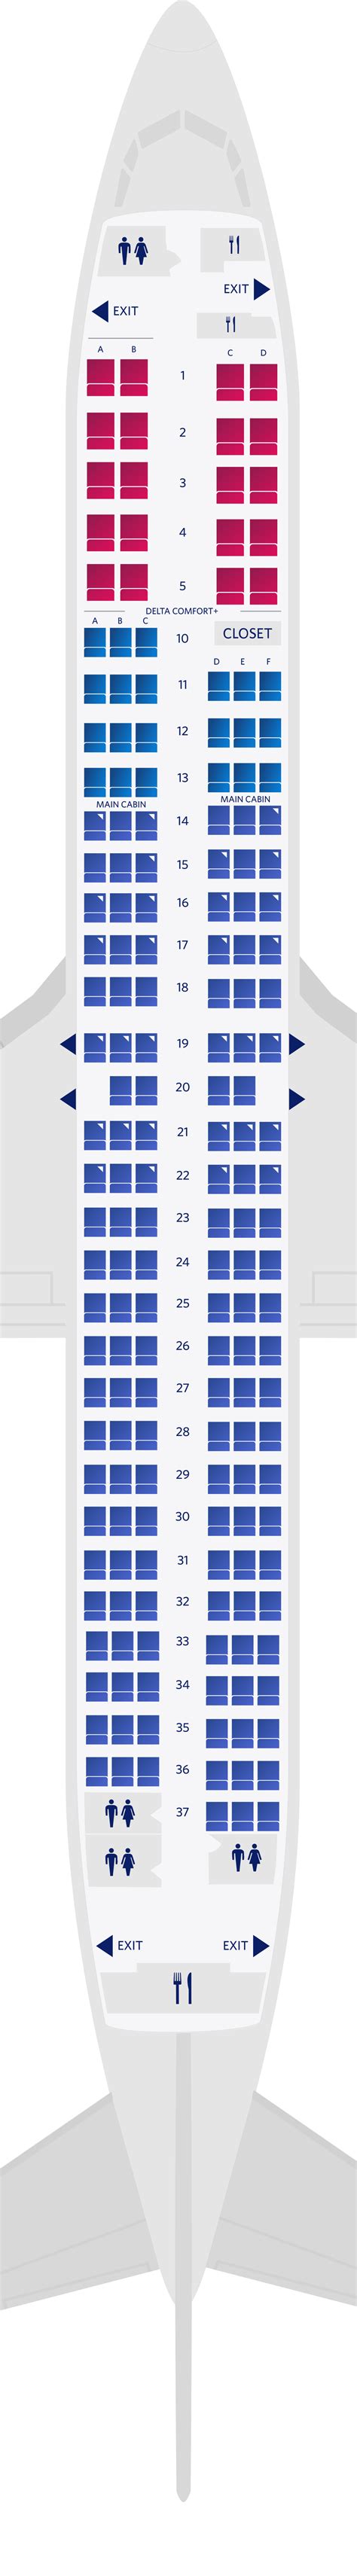 seat map boeing 737 900er